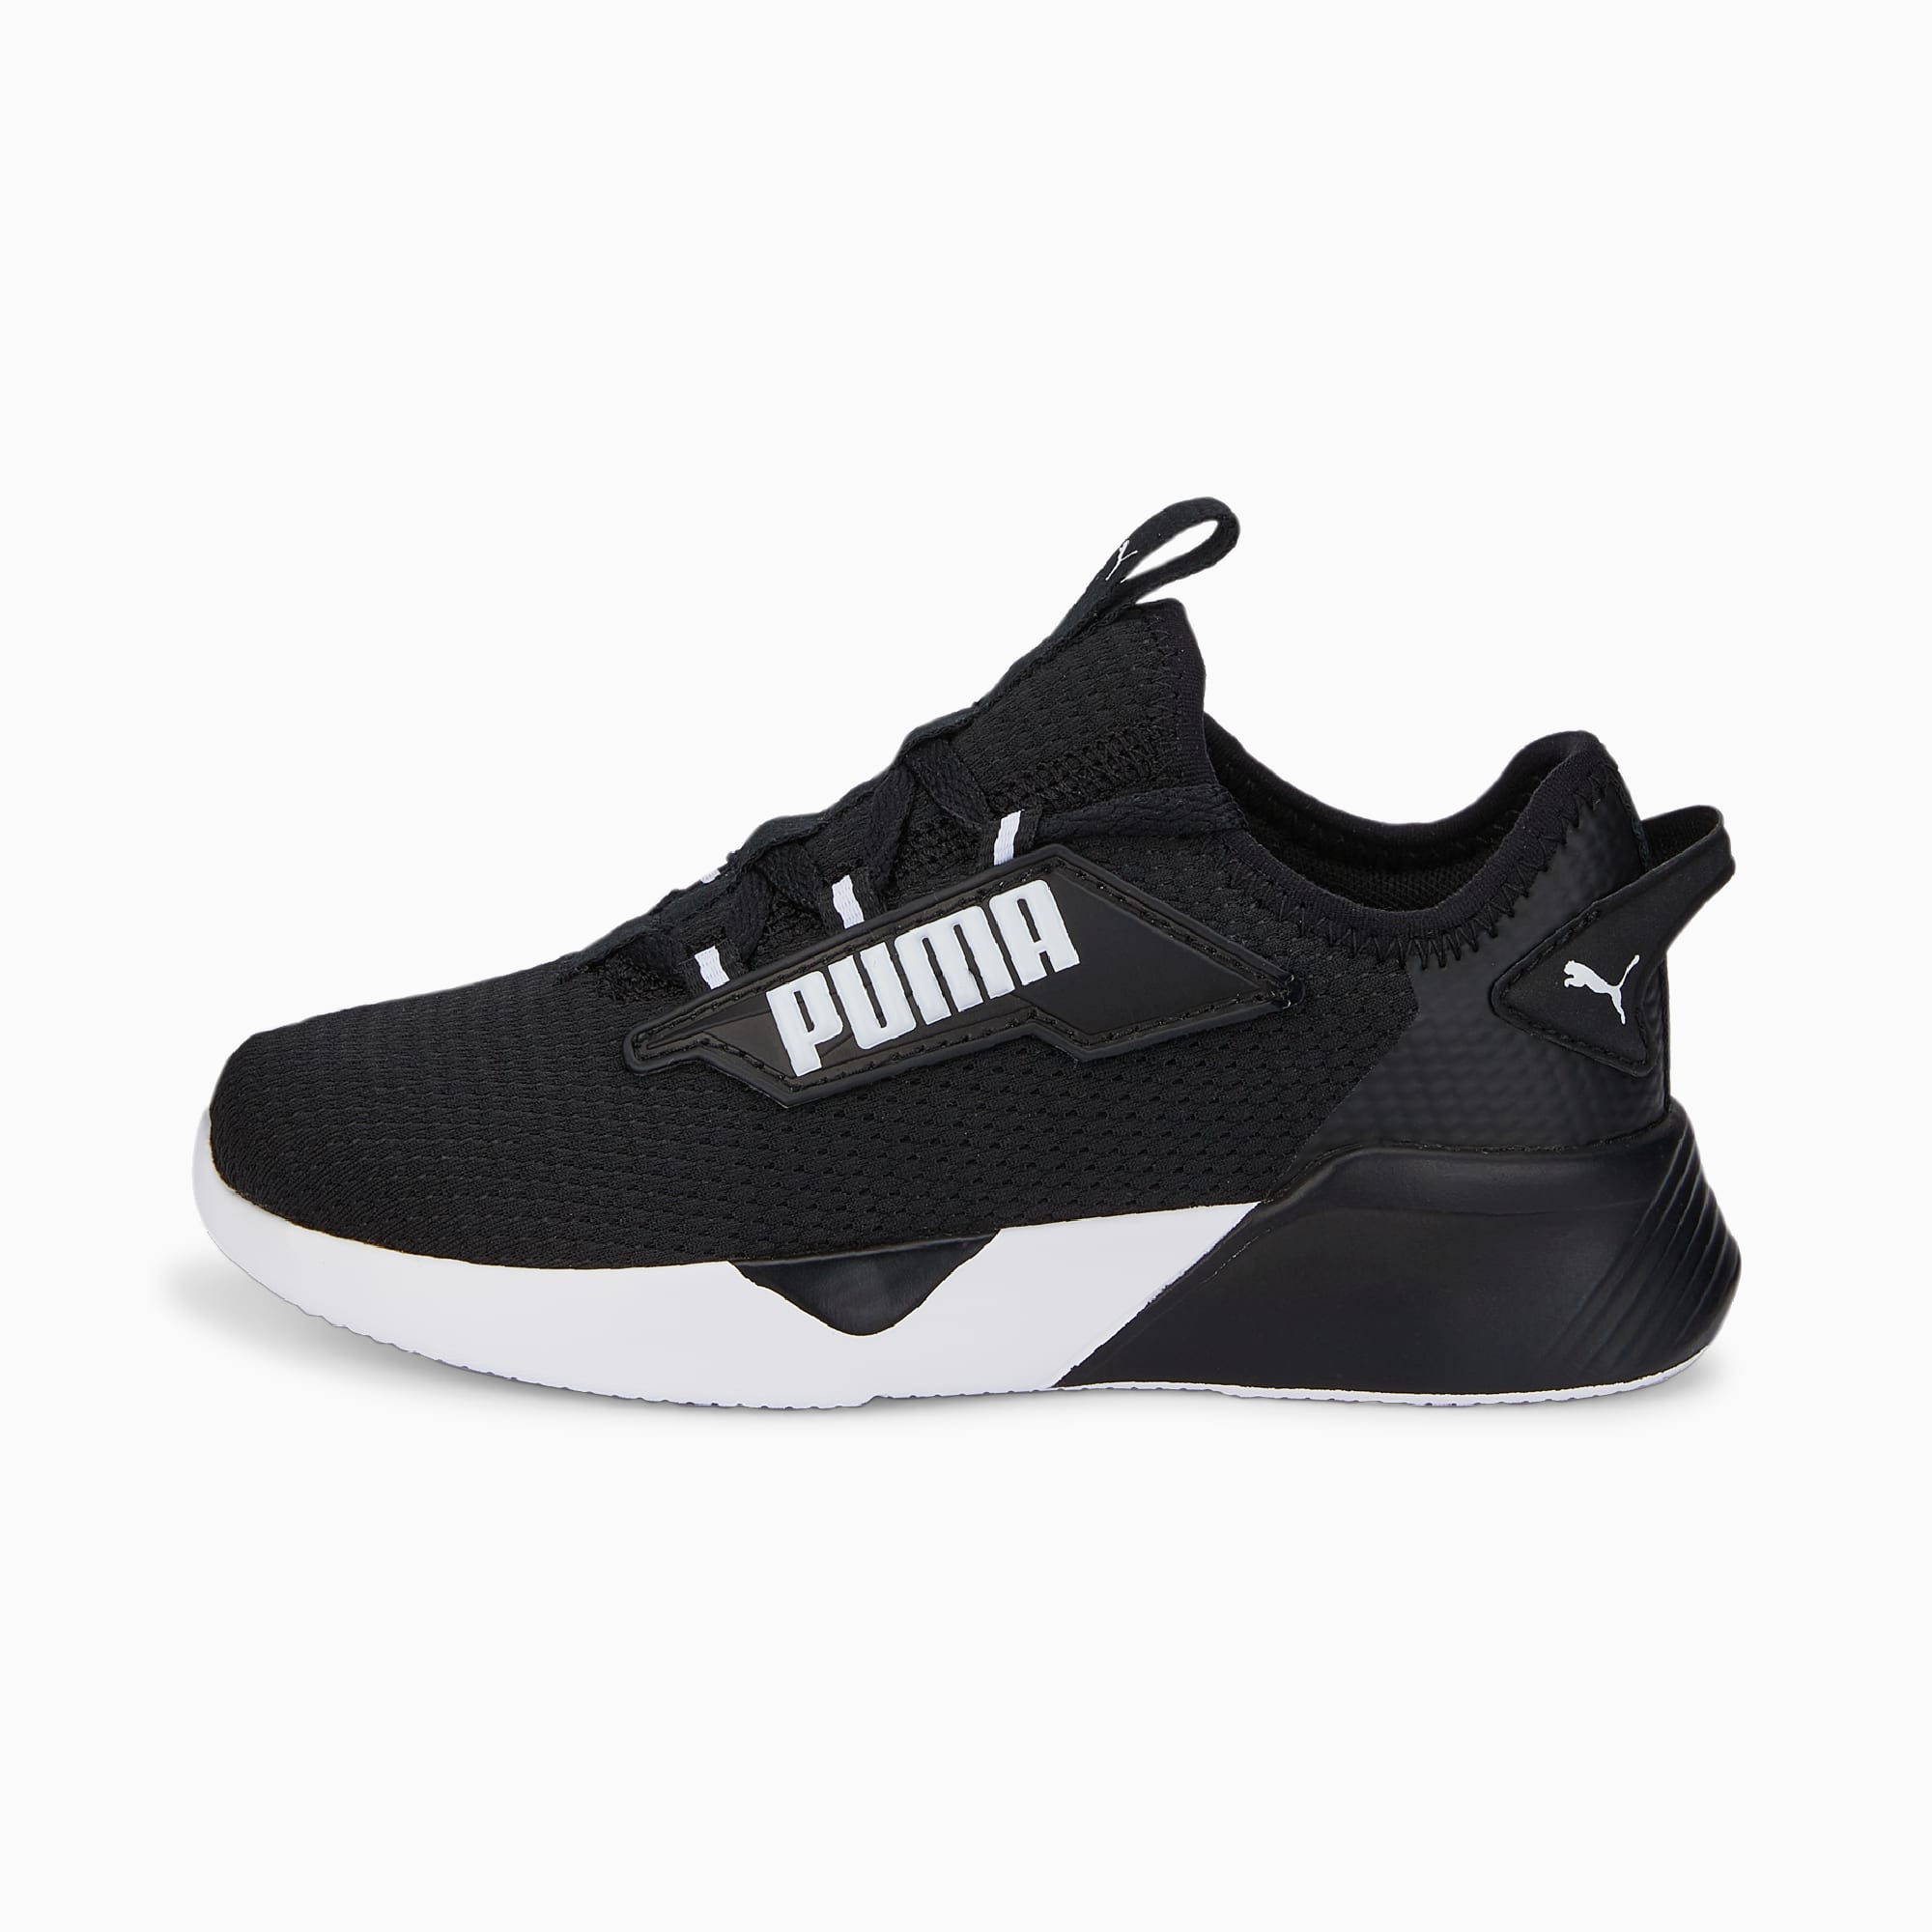 PUMA Retaliate 2 Sneakers für Kinder Schuhe, Schwarz/Weiß, Größe: 27.5, Schuhe